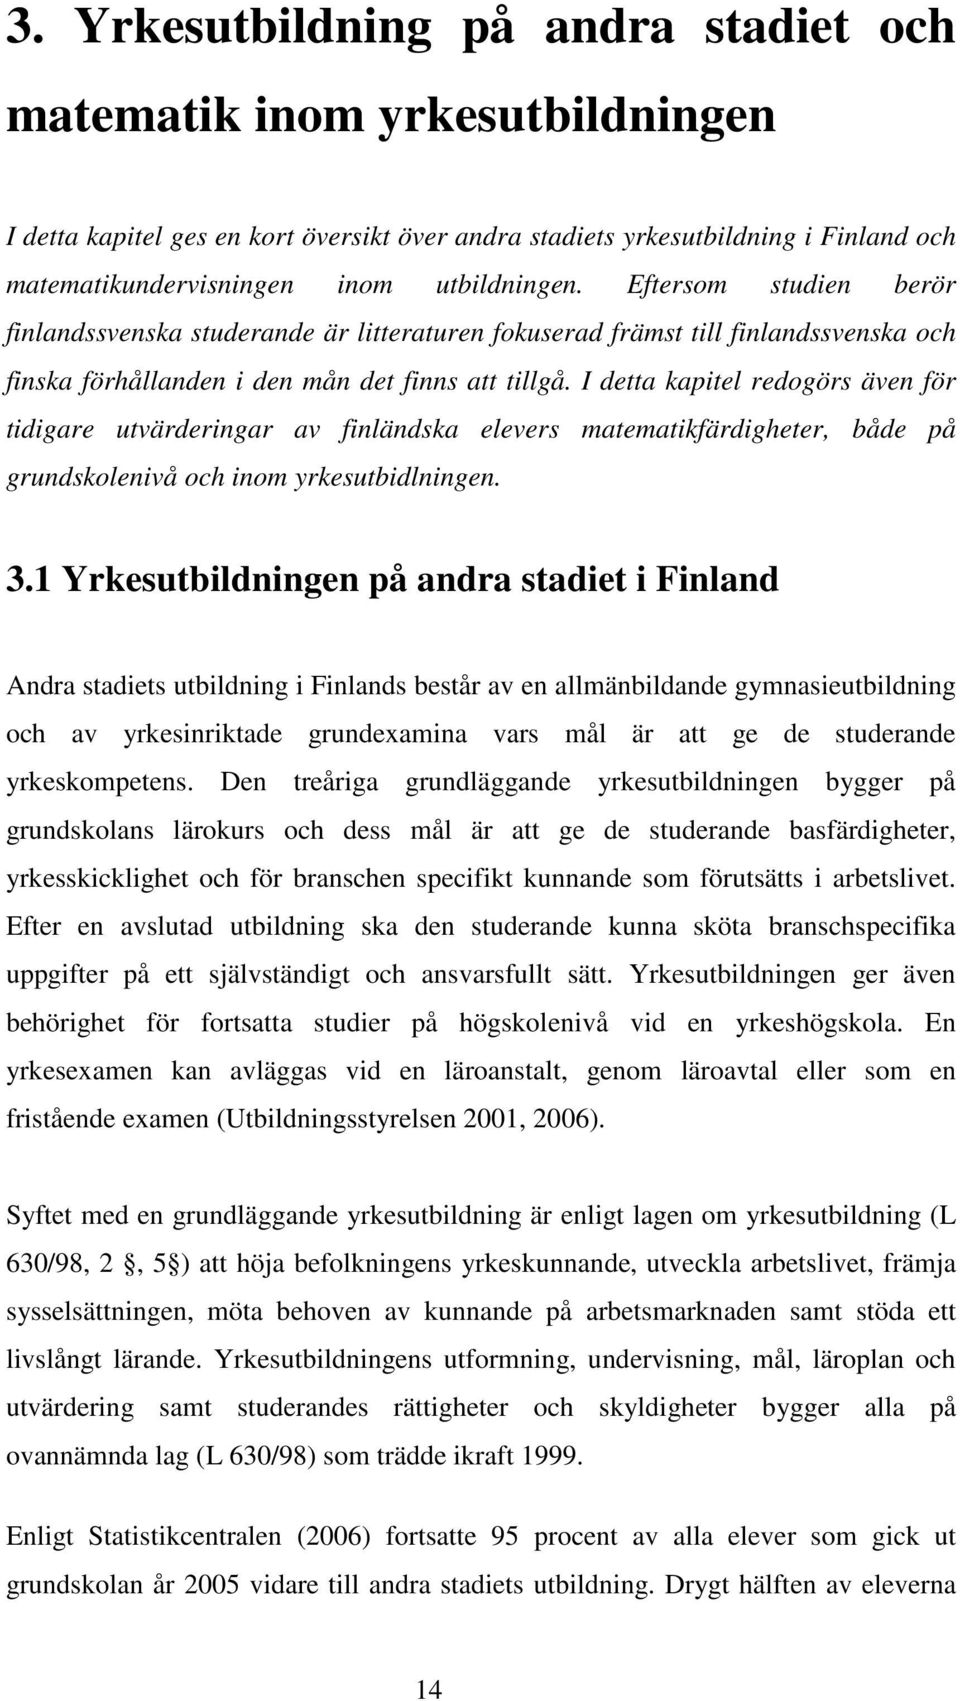 I detta kapitel redogörs även för tidigare utvärderingar av finländska elevers matematikfärdigheter, både på grundskolenivå och inom yrkesutbidlningen. 3.